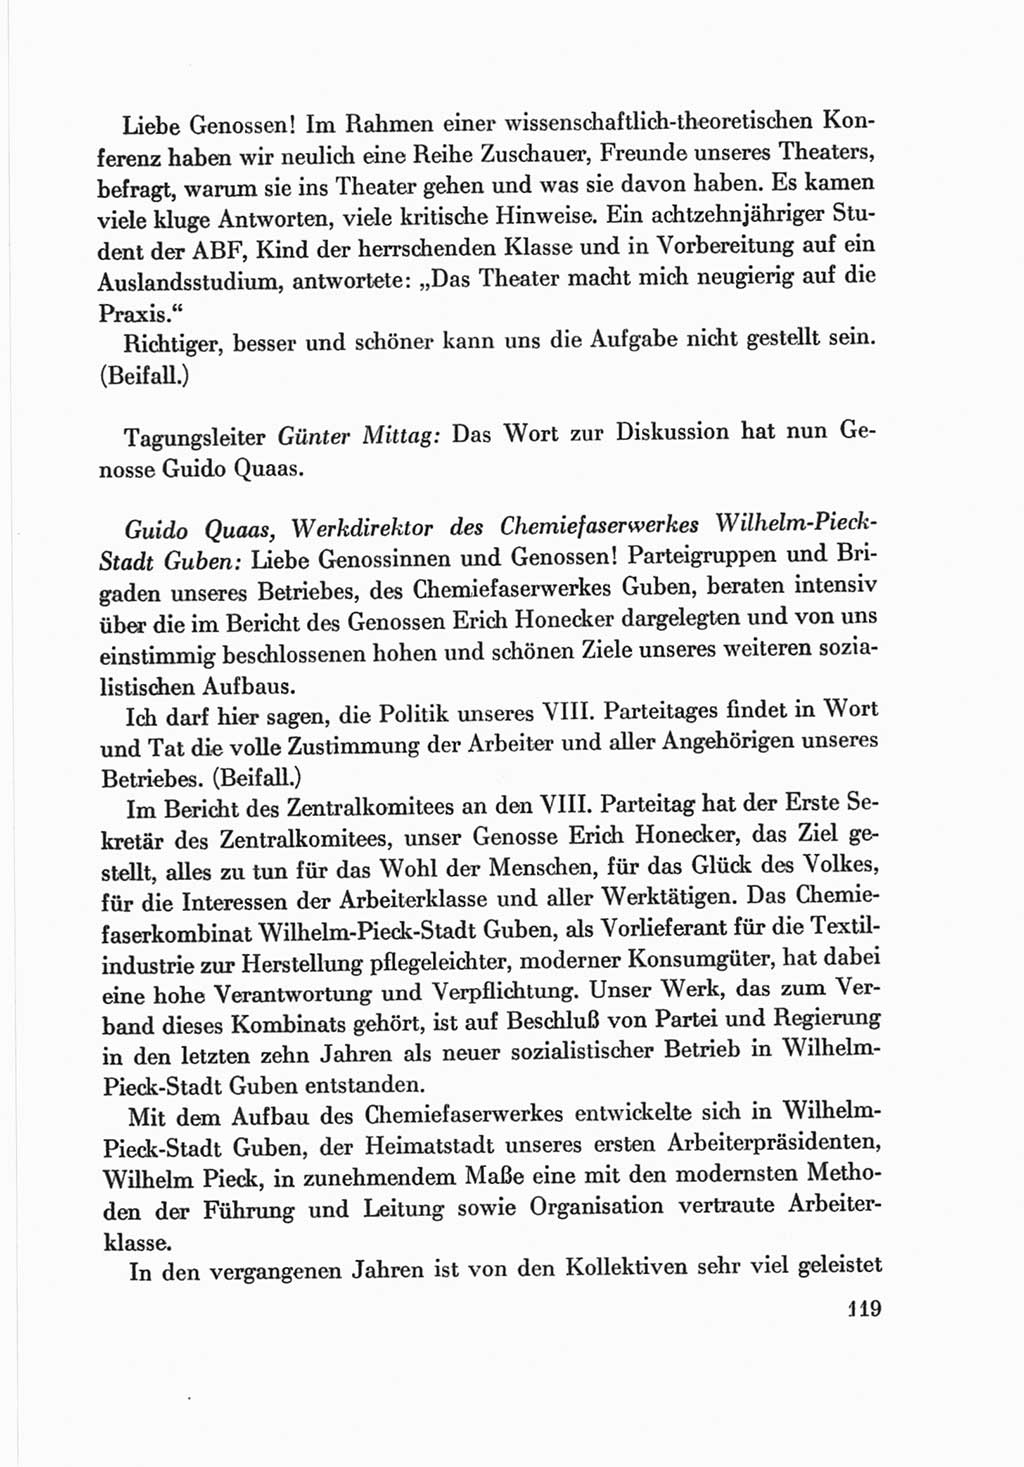 Protokoll der Verhandlungen des Ⅷ. Parteitages der Sozialistischen Einheitspartei Deutschlands (SED) [Deutsche Demokratische Republik (DDR)] 1971, Band 2, Seite 119 (Prot. Verh. Ⅷ. PT SED DDR 1971, Bd. 2, S. 119)